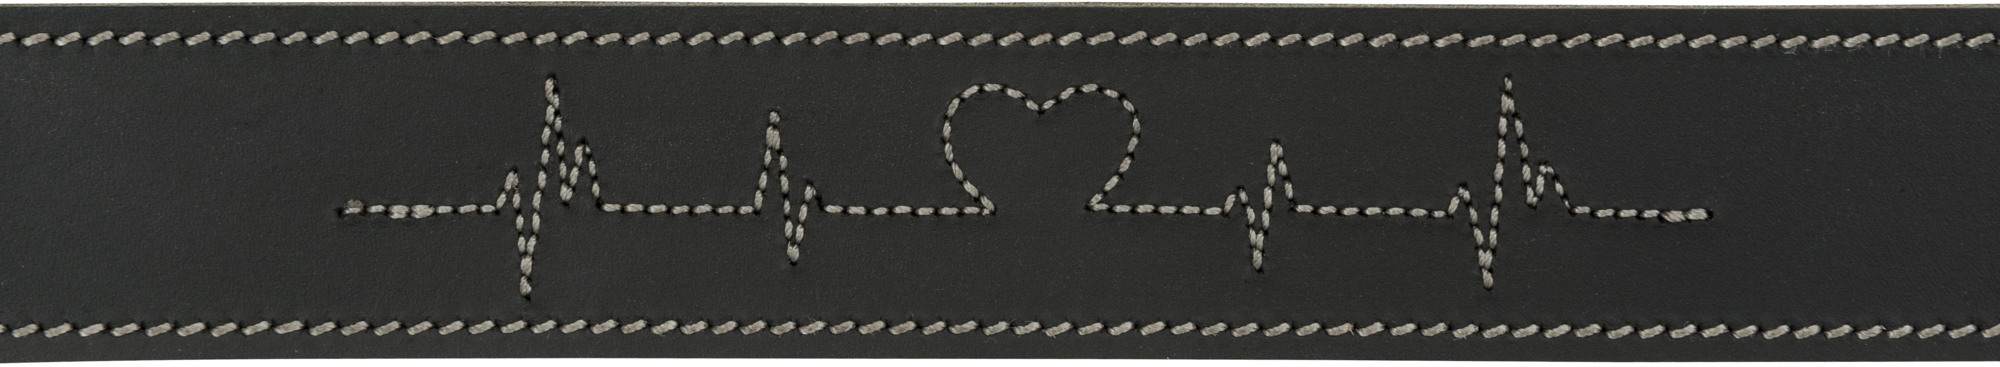 Coleira de couro encerado e envelhecido preto Rustic Heartbeat - 3 tamanhos disponíveis